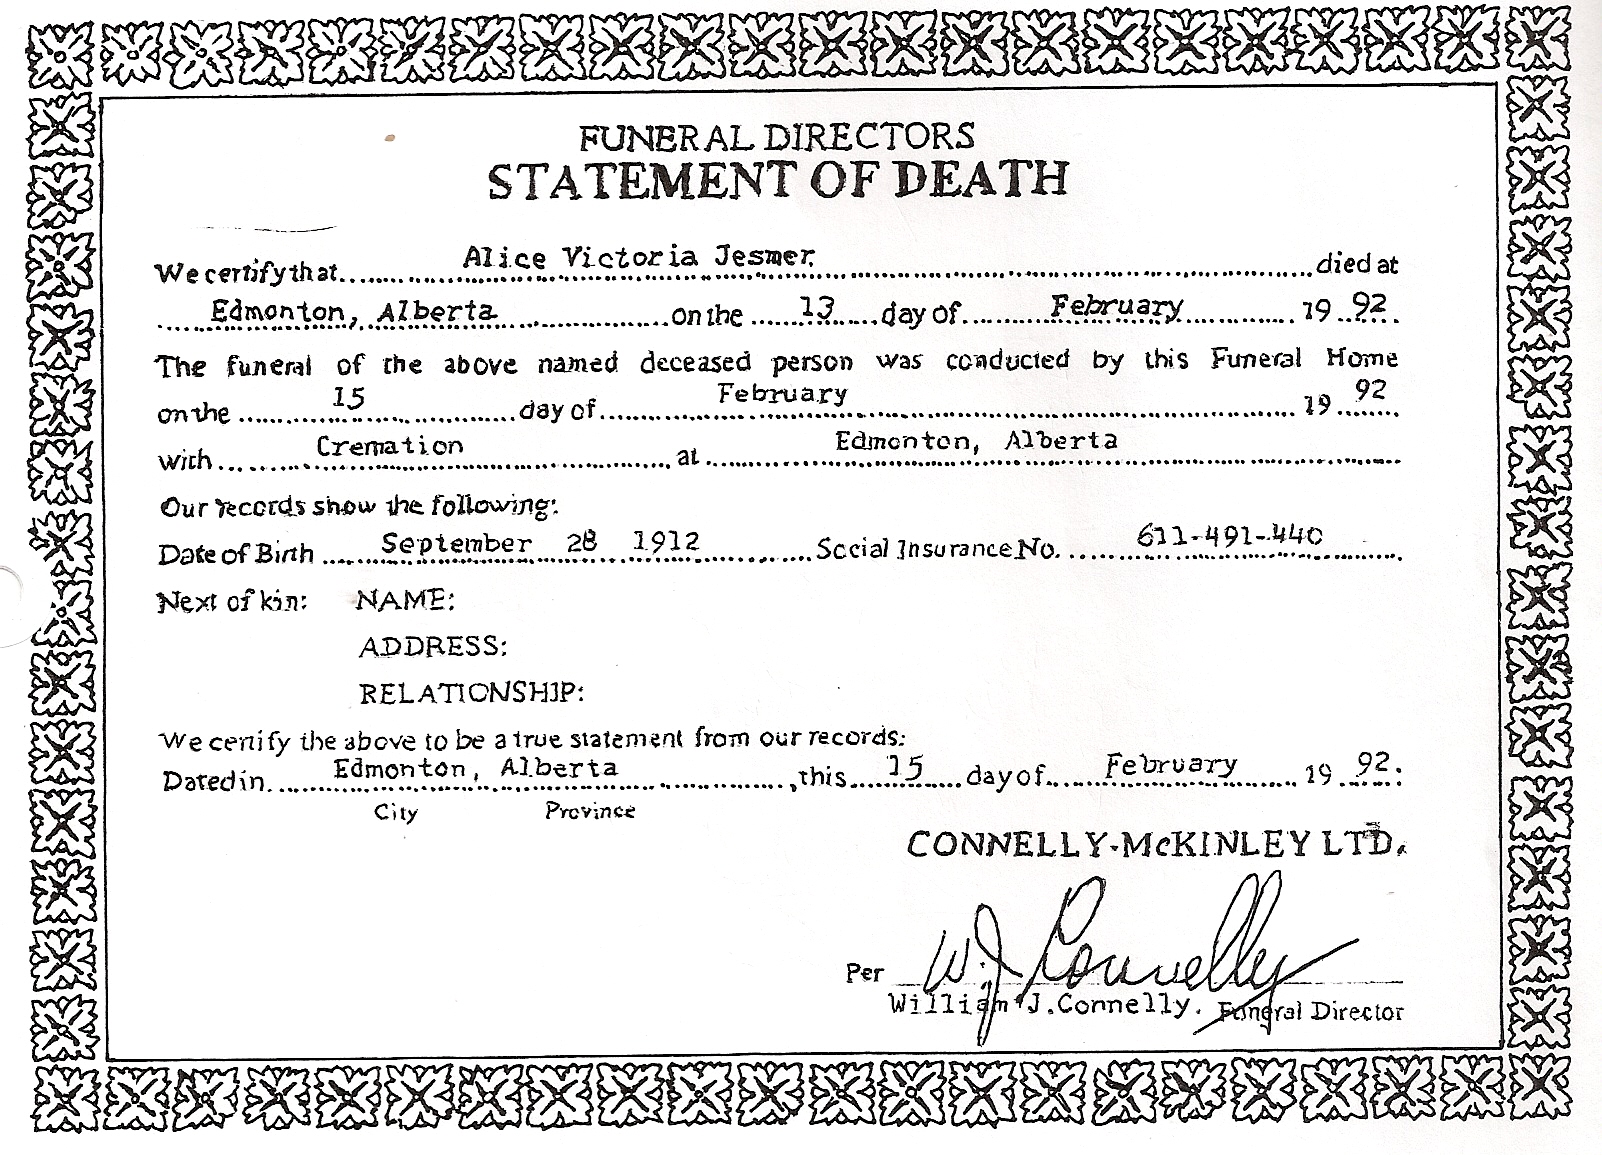 death certificate of Alice